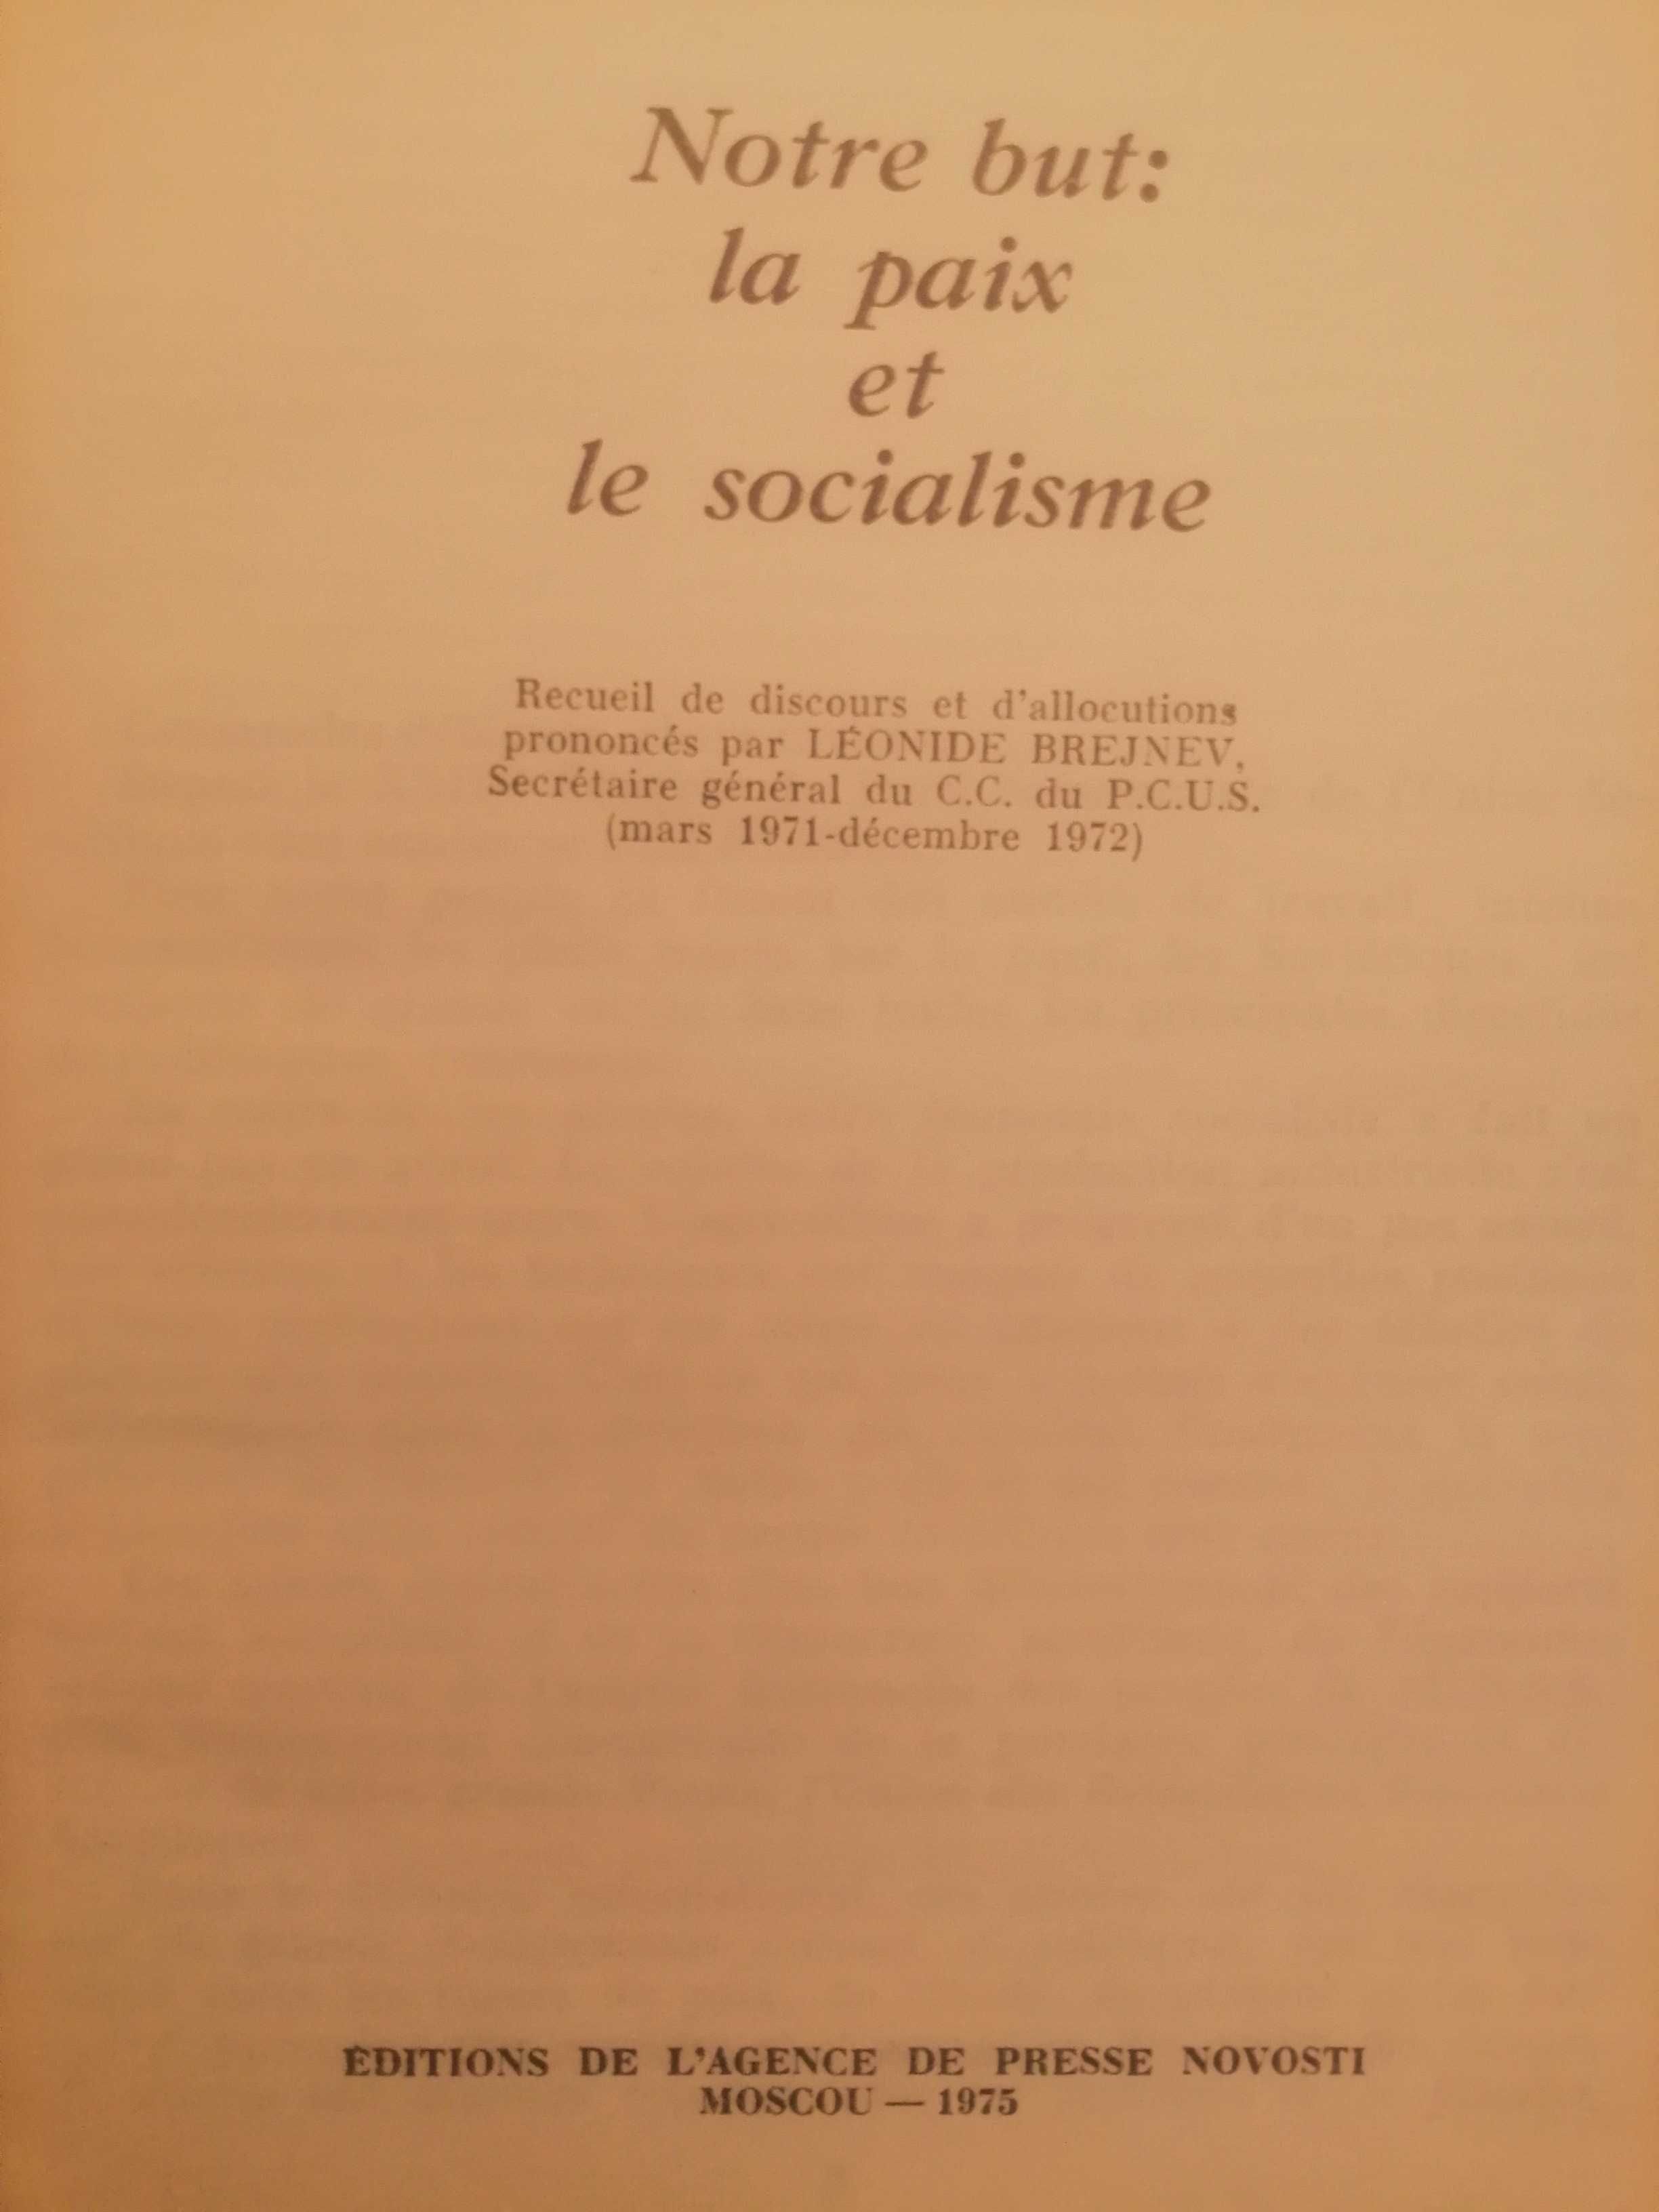 Livro, L. I. Brejnev, Notre but: la paix et le socialisme